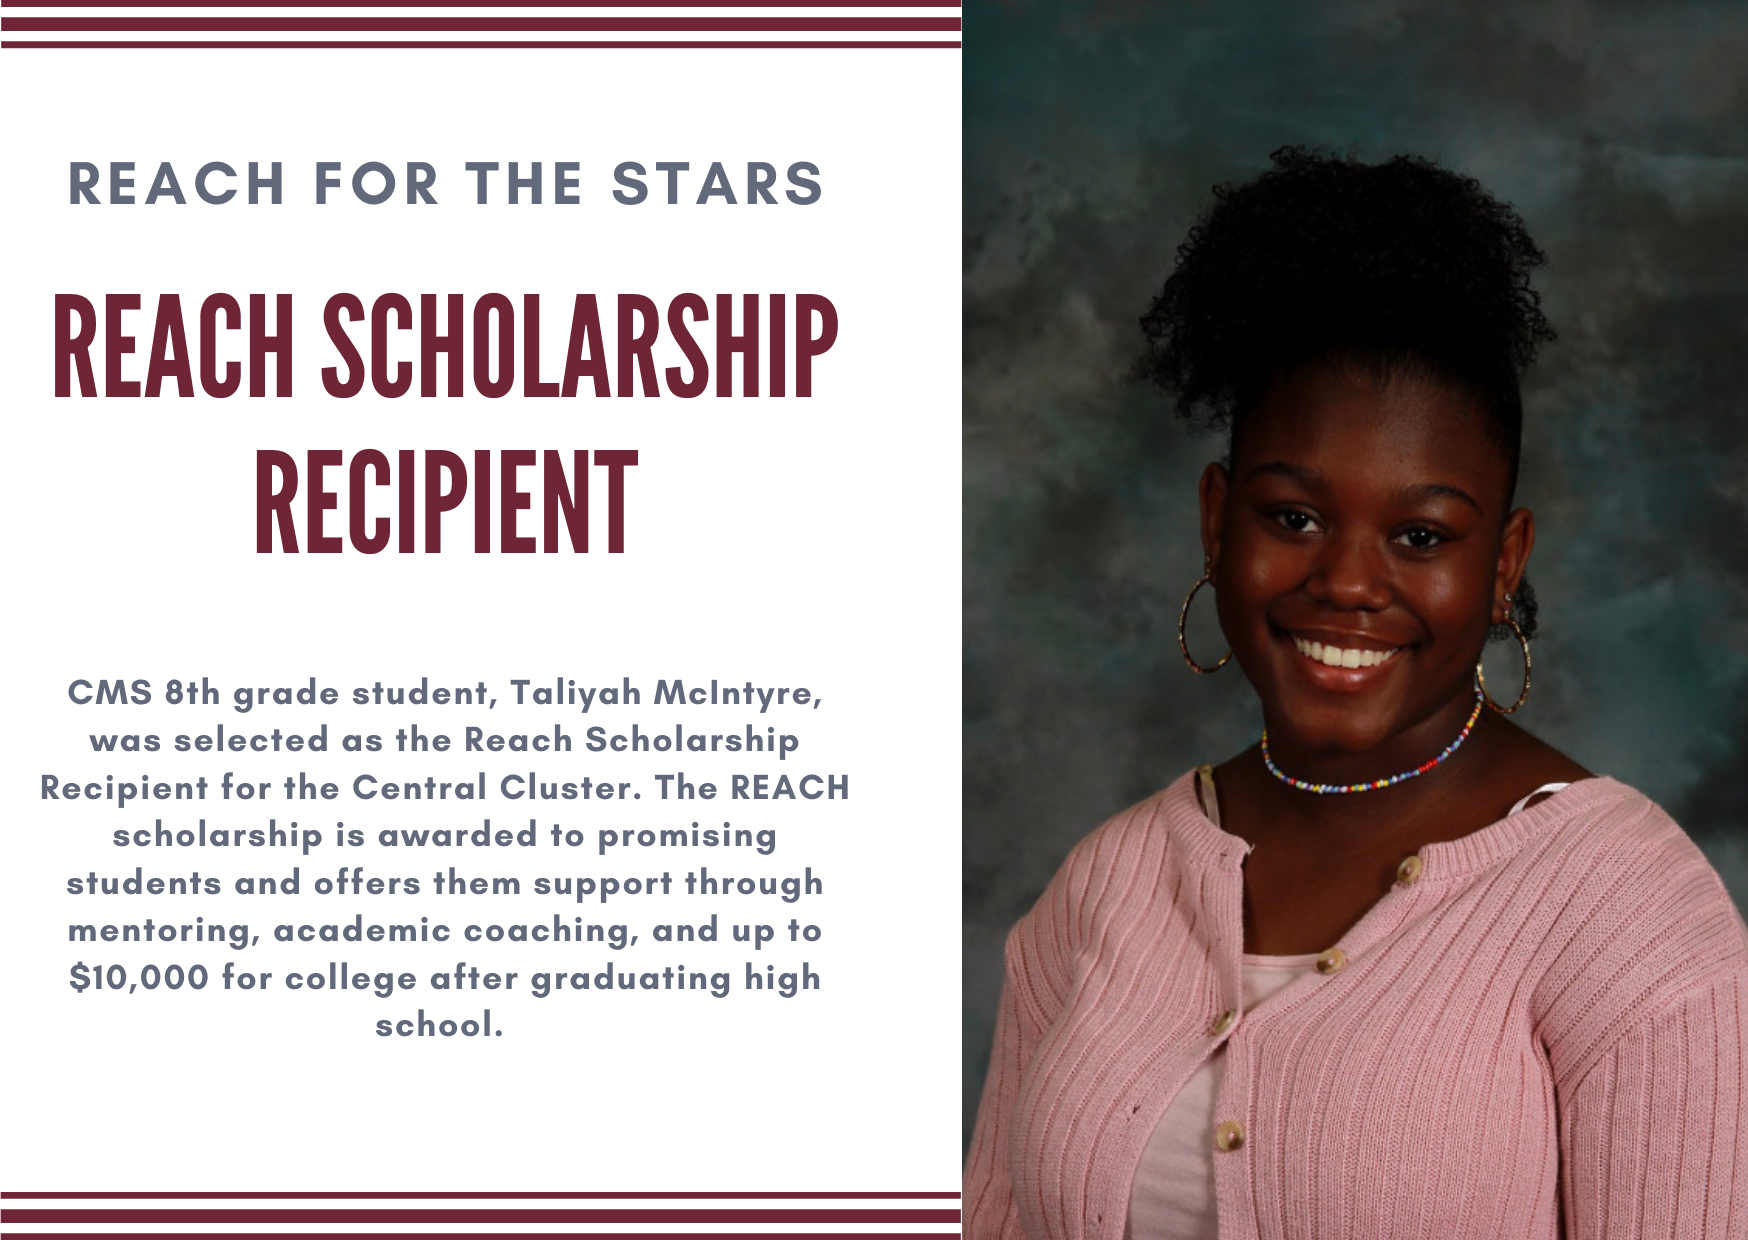 REACH scholarship recipient